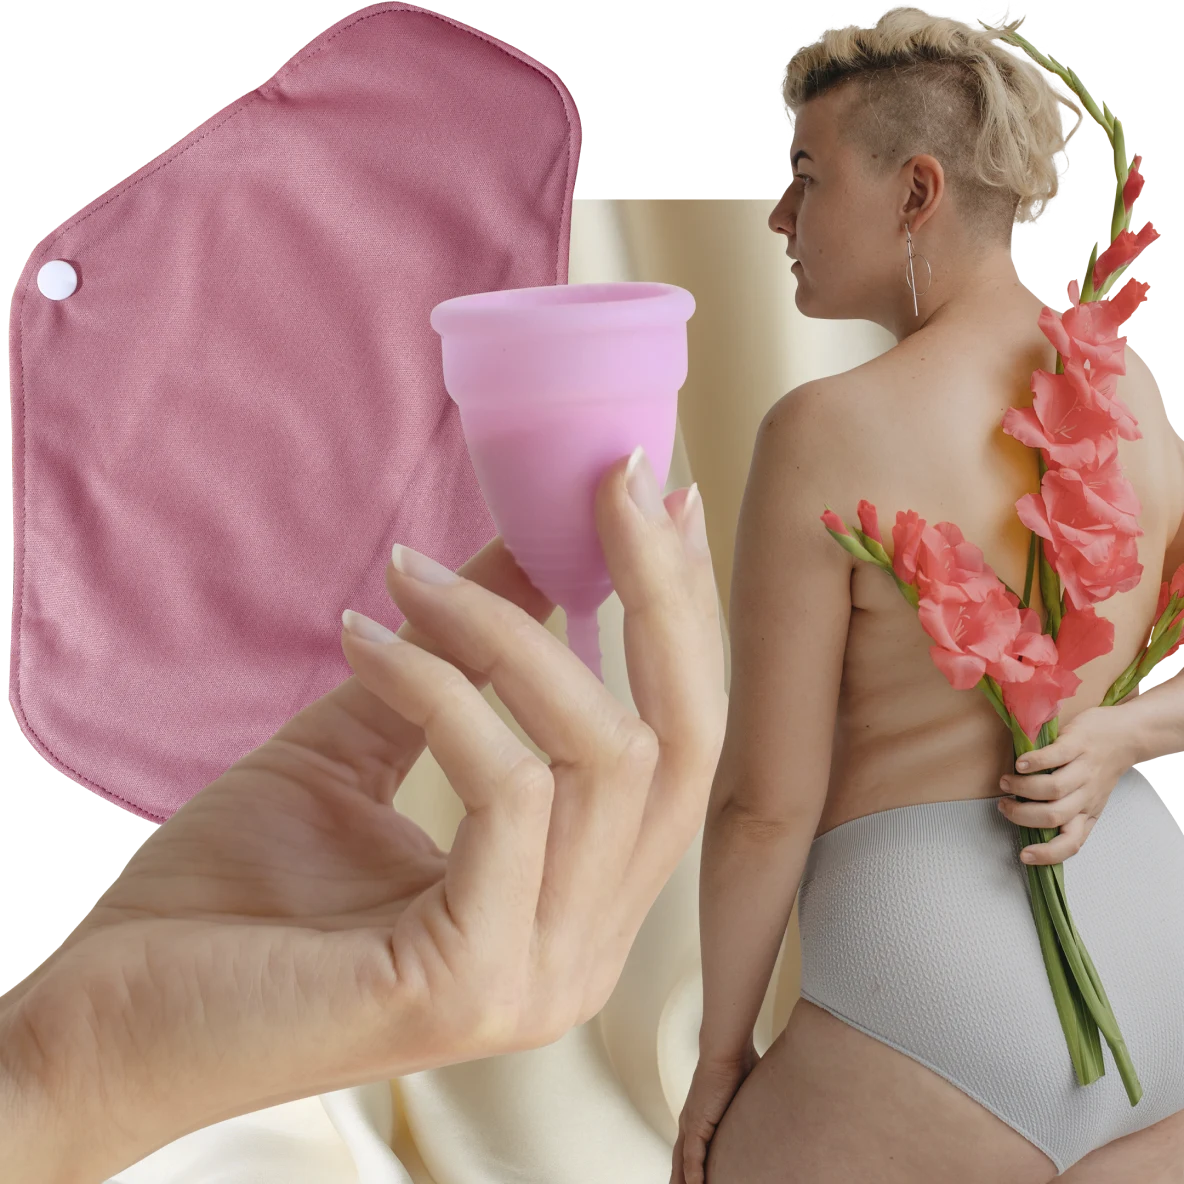 Main d’une personne blanche tenant une coupe menstruelle rose. À gauche, serviette lavable rose. À droite, femme blanche aux cheveux blonds courts tenant des fleurs roses dans son dos.